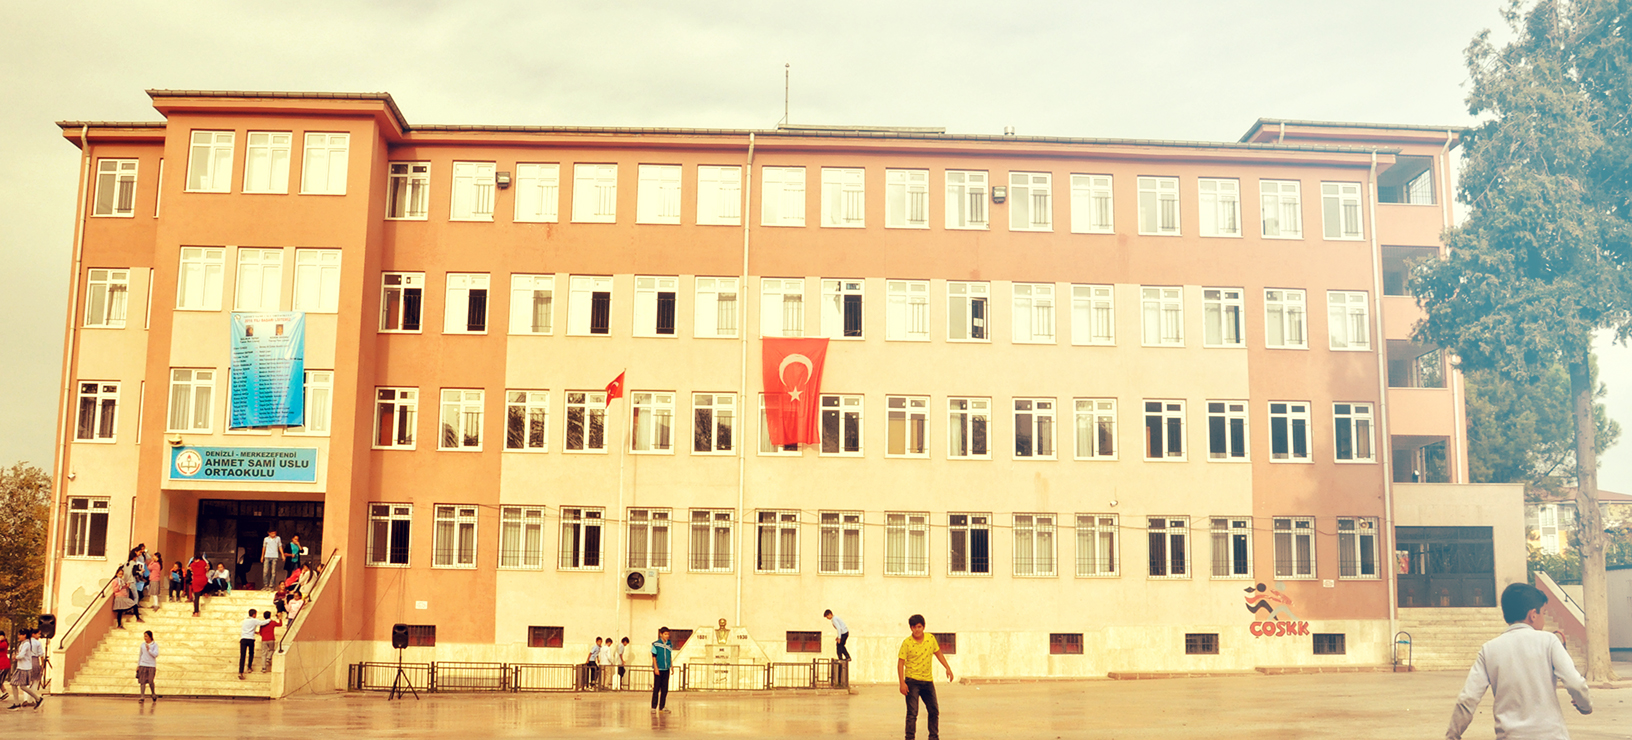 Lata Yapı Ahmet Sami Uslu Ortaokulu